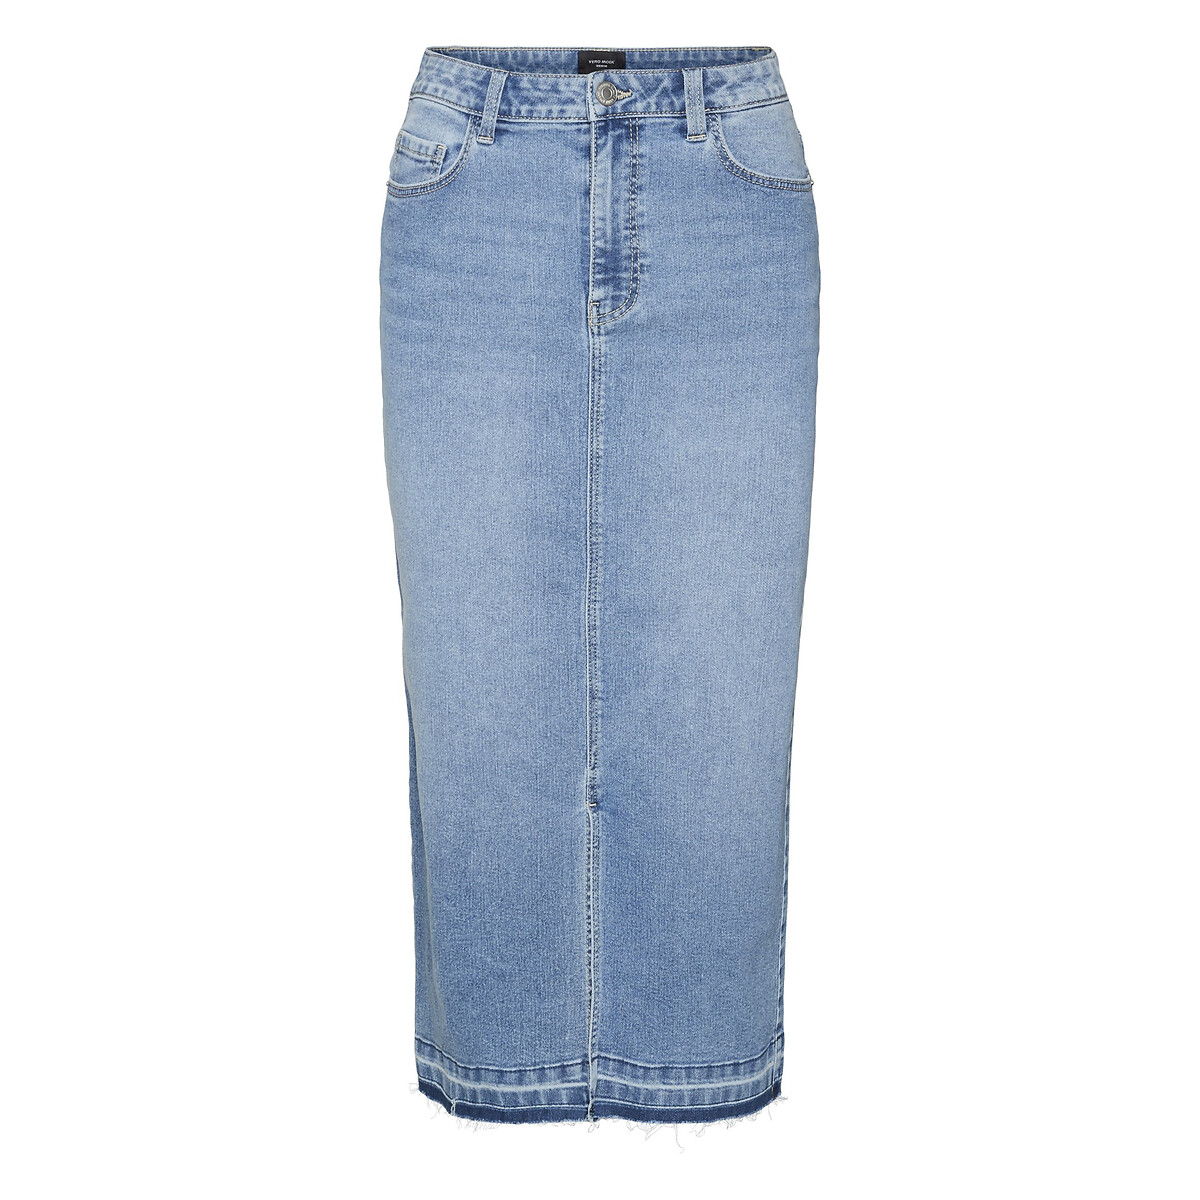 Юбка из джинсовой ткани с высокой посадкой  XS синий LaRedoute, размер XS - фото 1